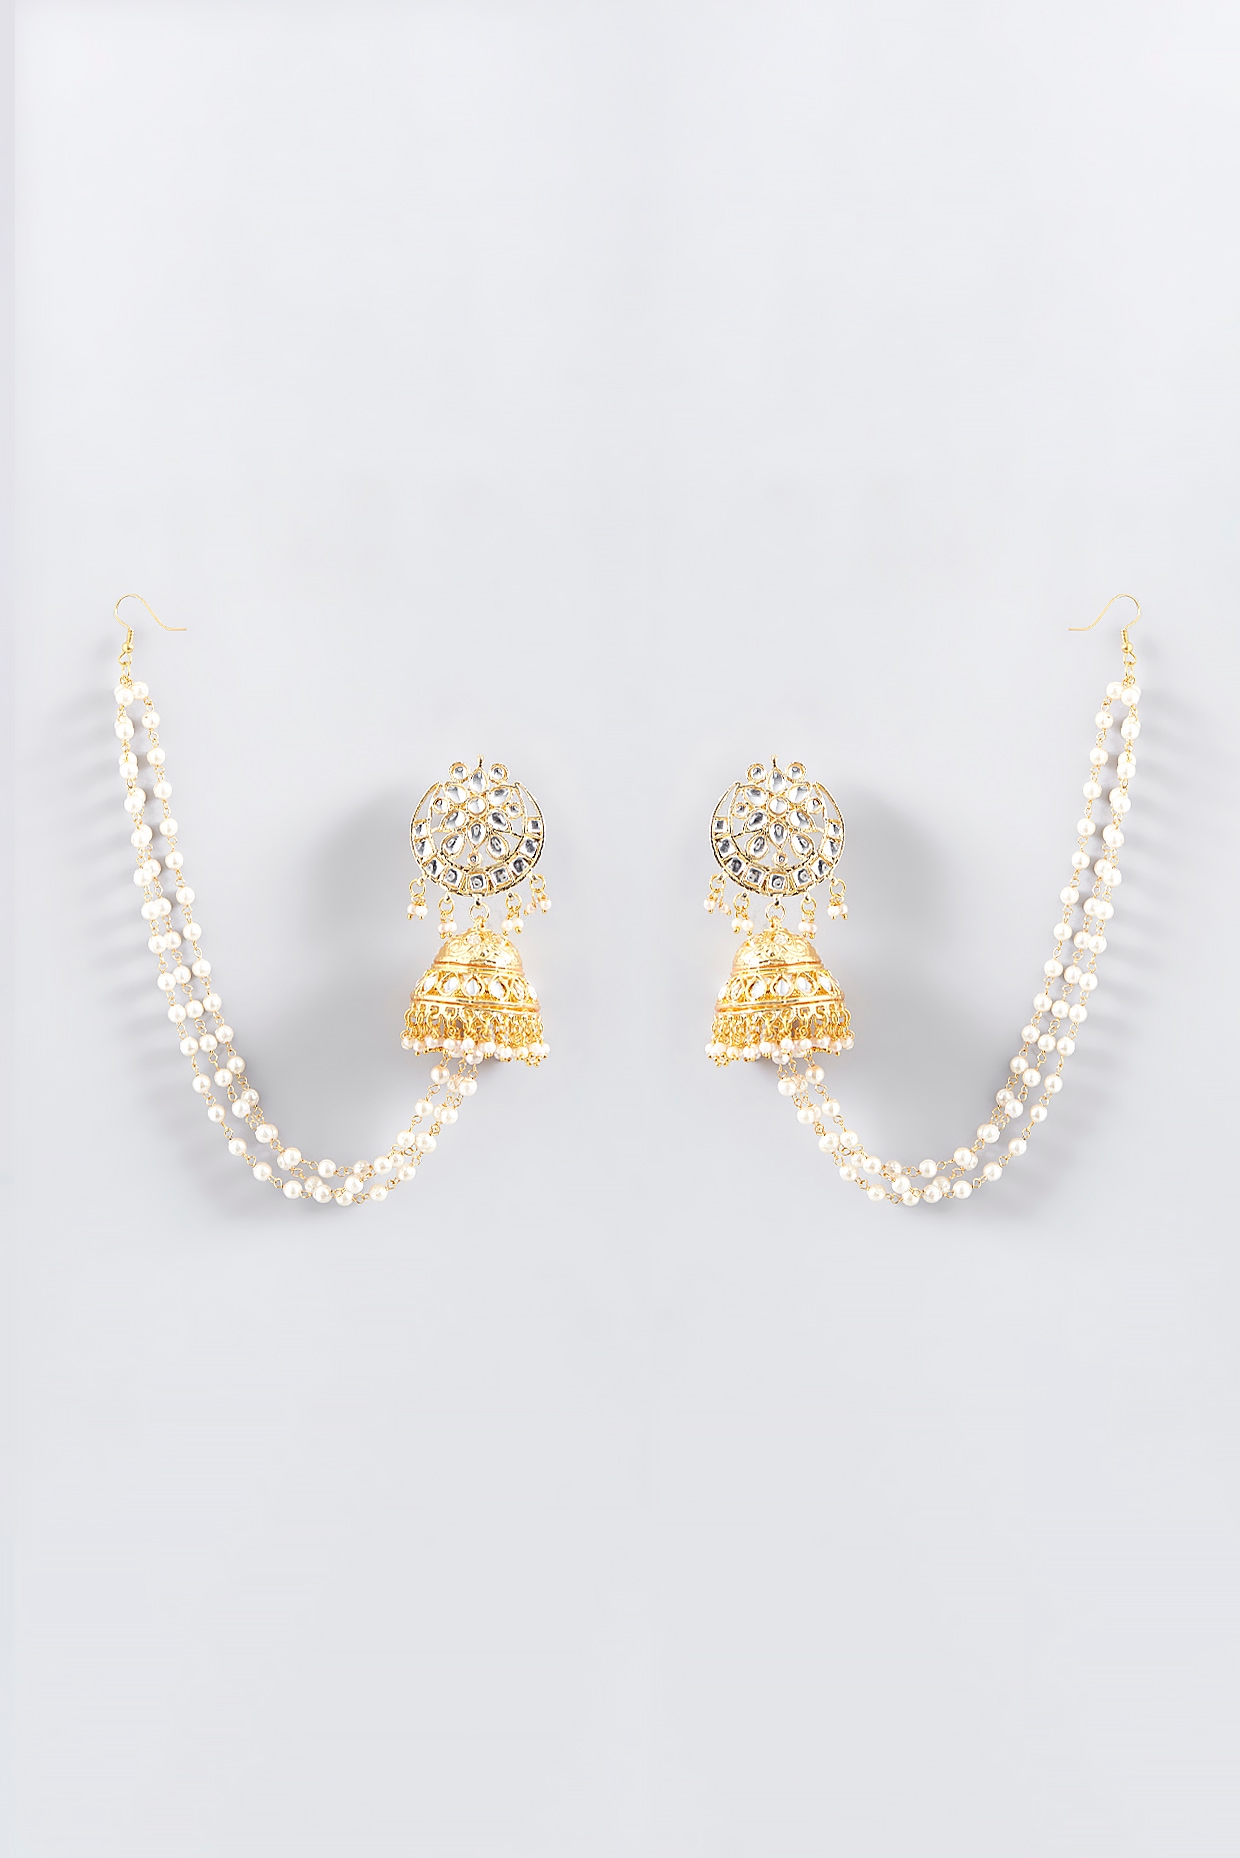 Buy Elegant White Stone Earrings Gold Plated Kallu Kammal Online